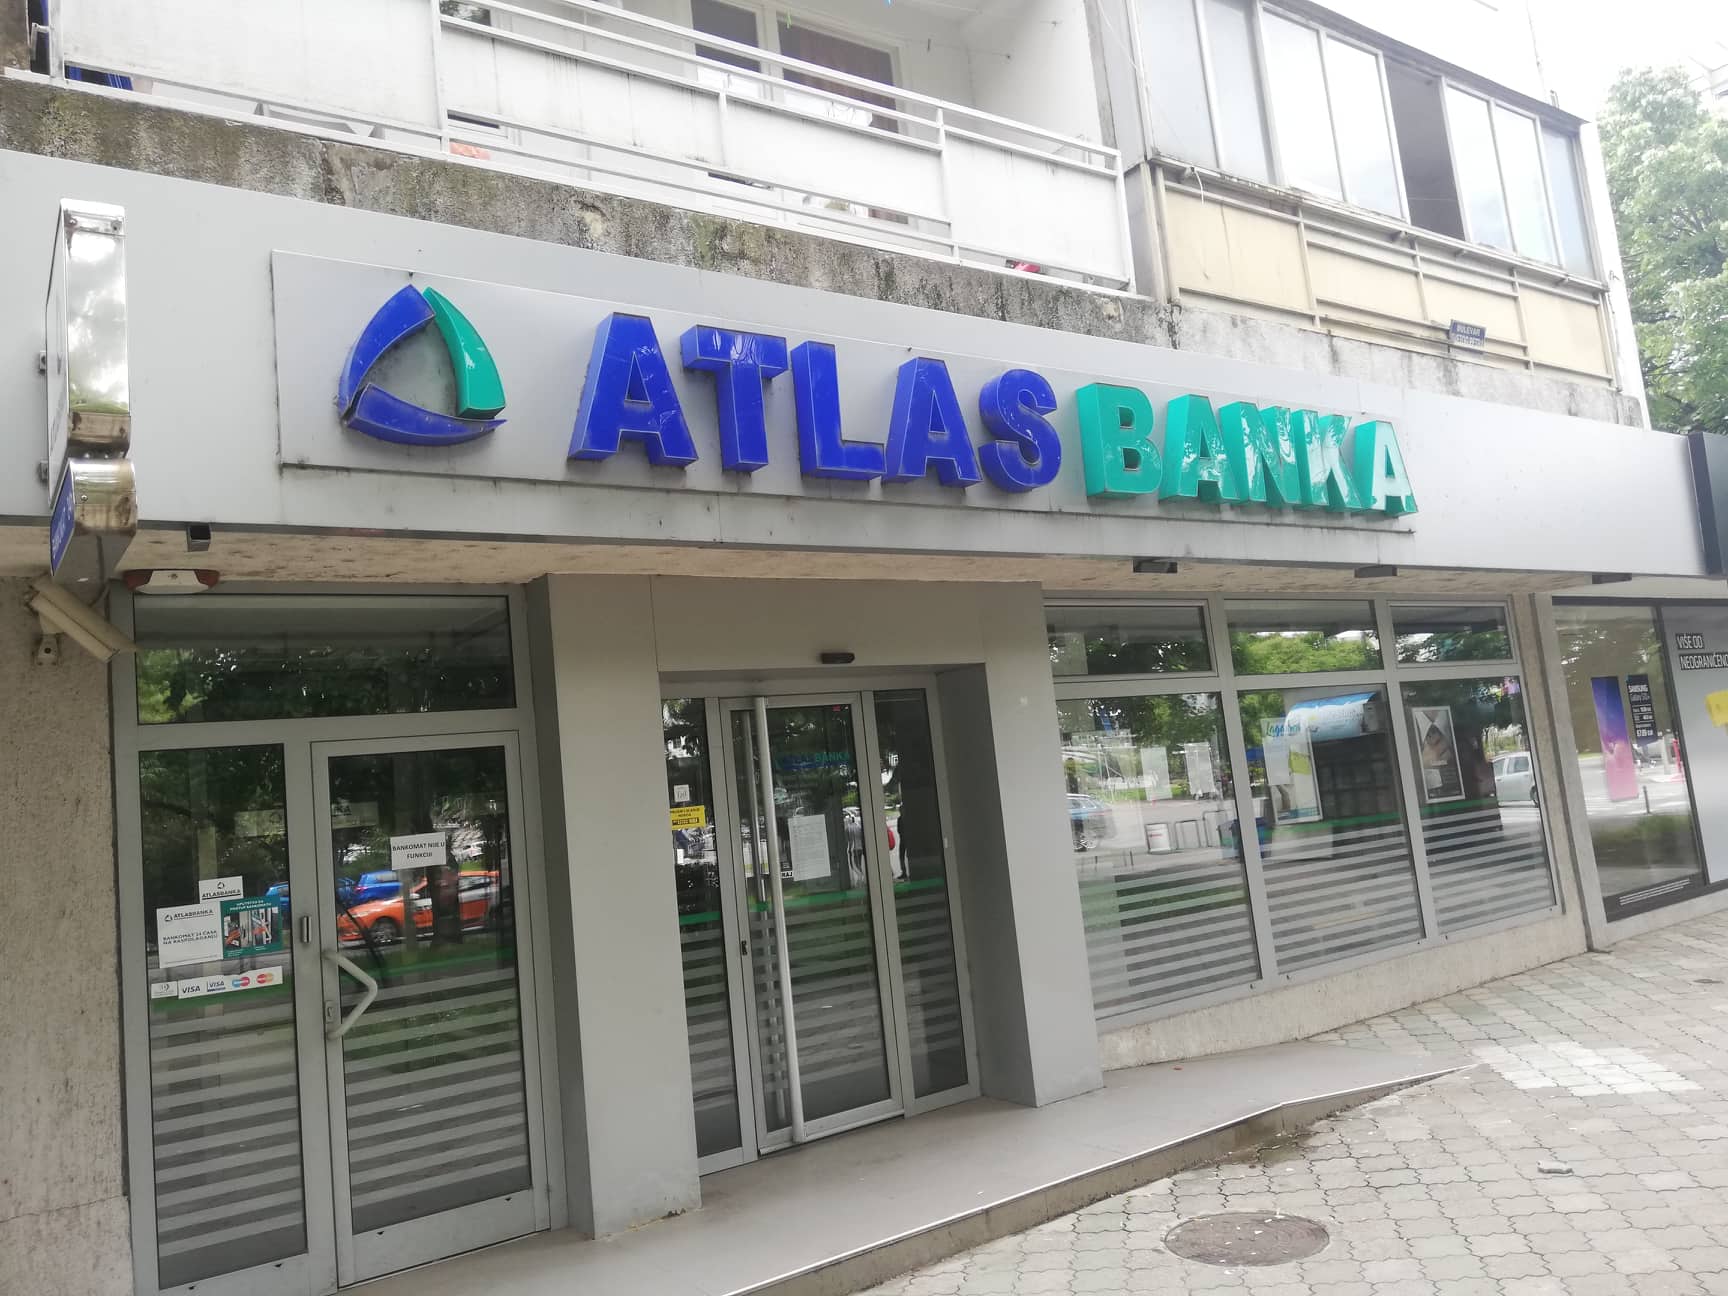 Atlas Grupa: Sporazum sa Đurđićem nezakonit